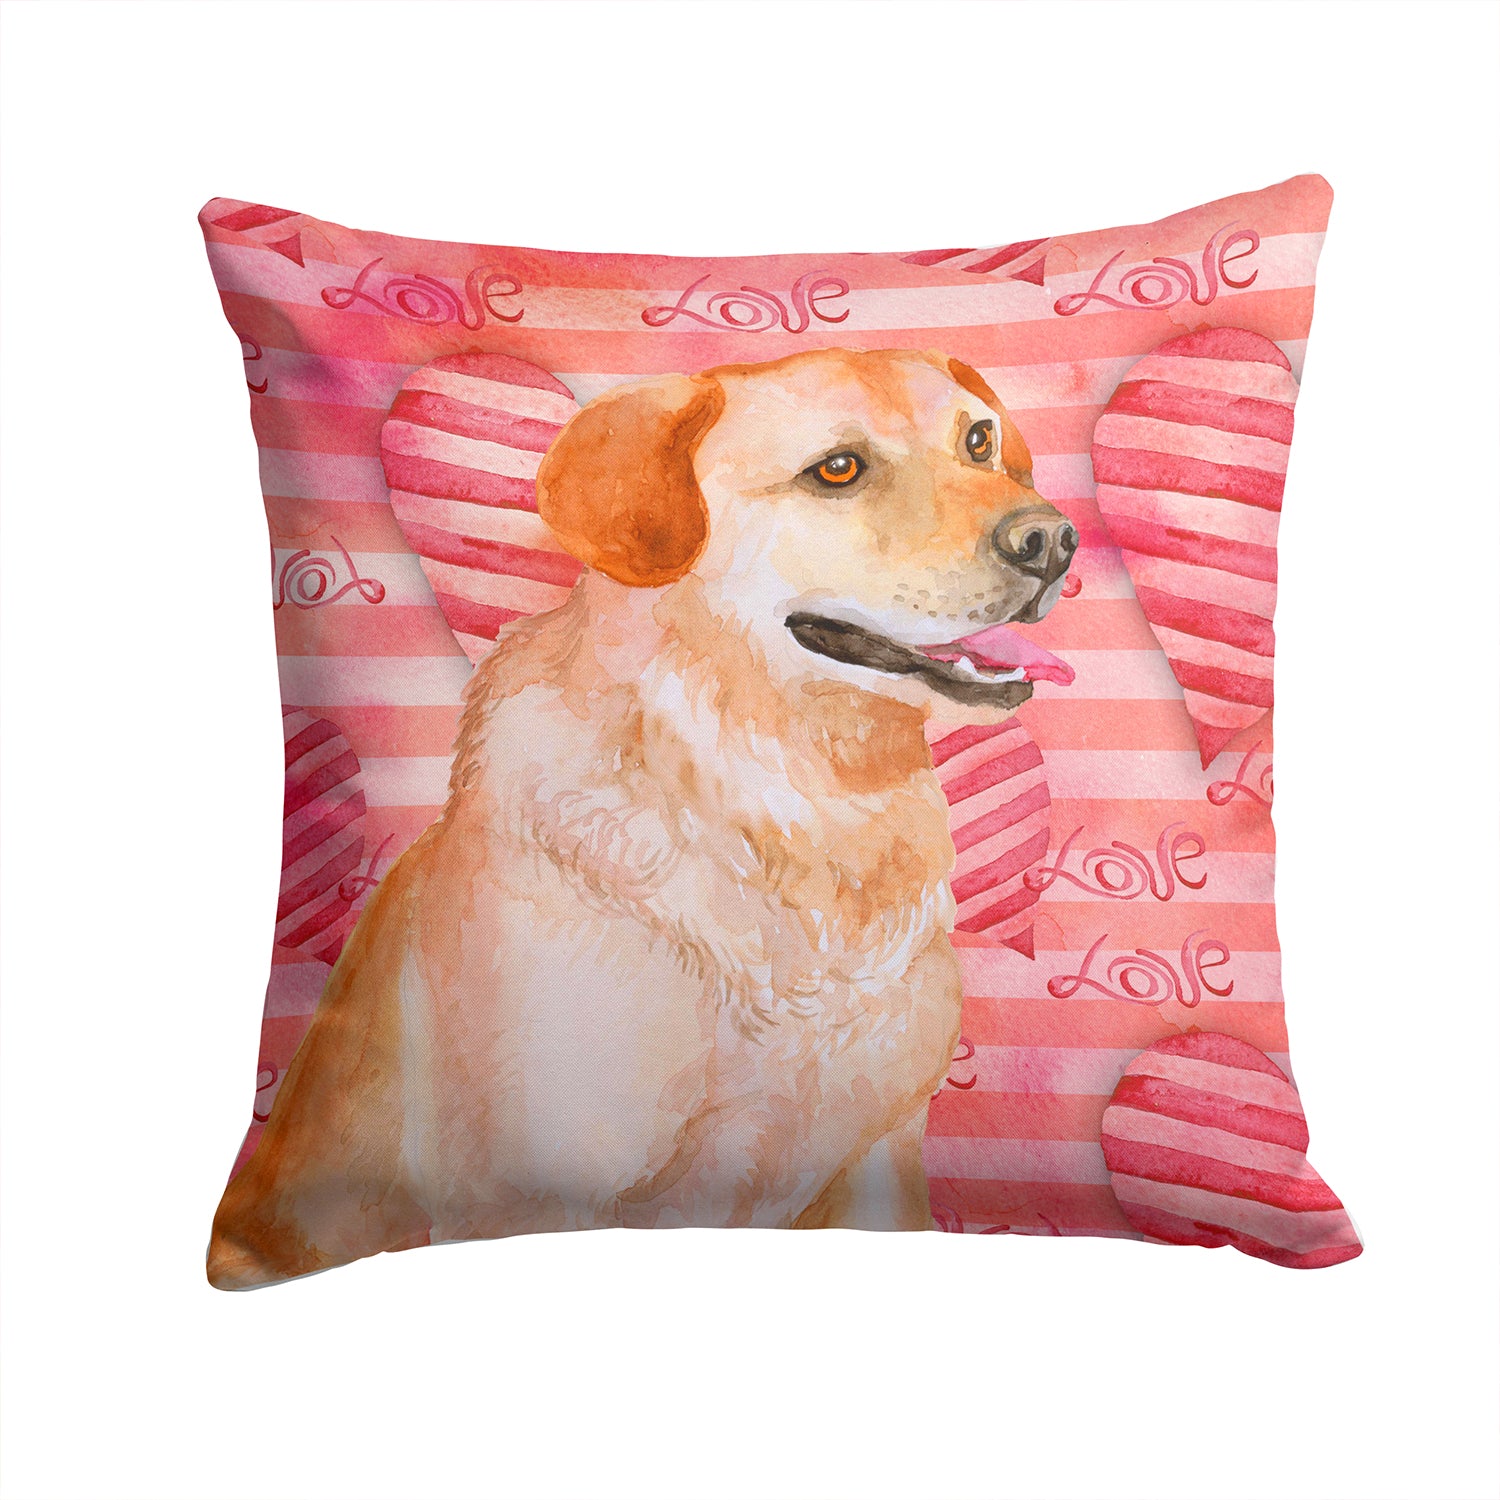 Labrador Retriever Love Fabric Decorative Pillow BB9801PW1414 - the-store.com